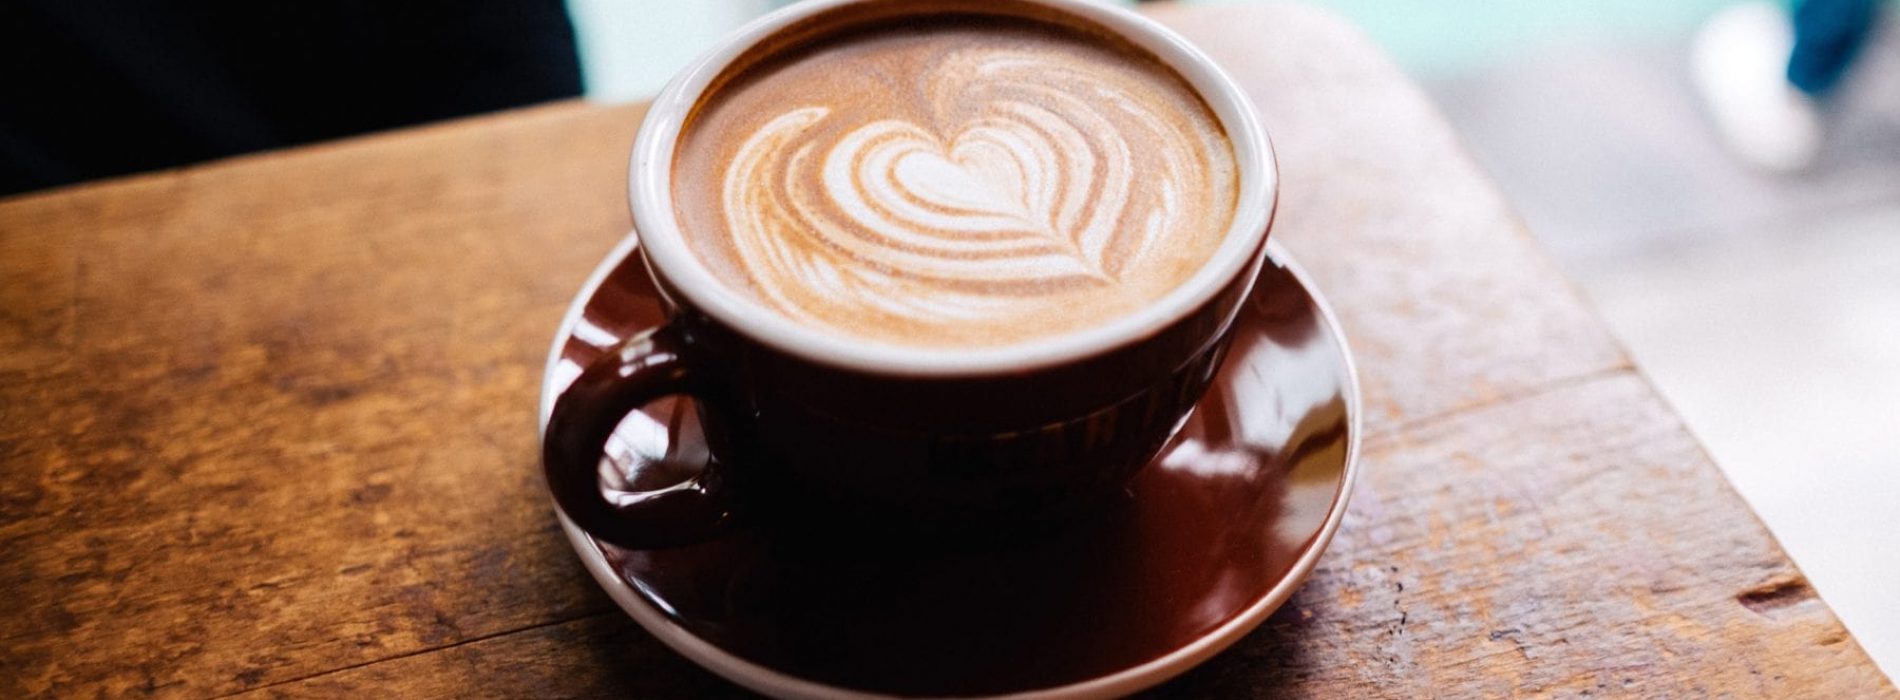 Duurzame koffie: een kwestie van weten wat je drinkt